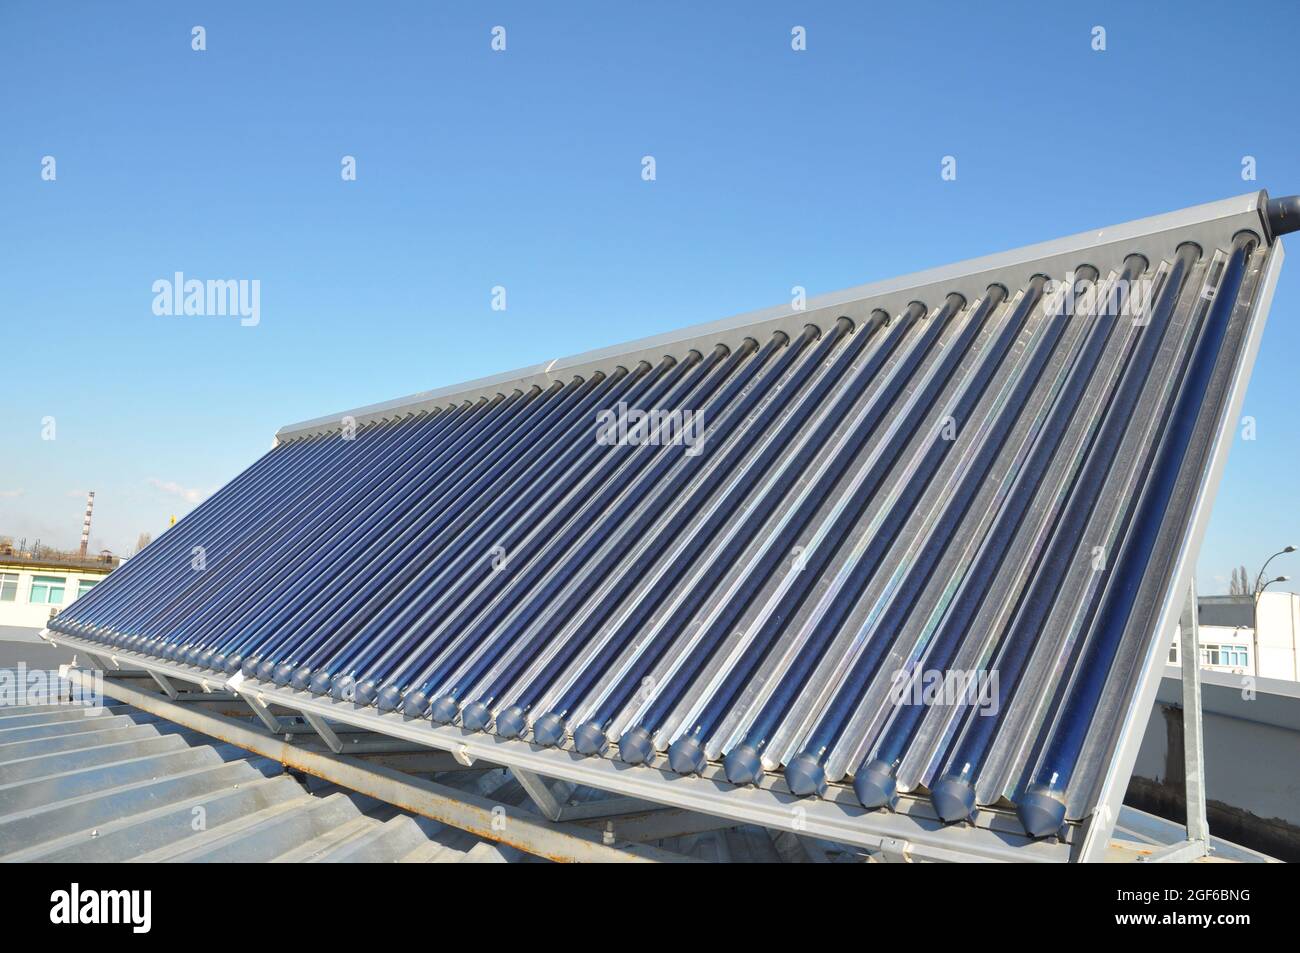 Eine Nahaufnahme eines evakuierten Rohr solarthermischen Warmwassersystems, solarthermische Kollektor auf einem Metalldach gegen den blauen Himmel installiert. Stockfoto